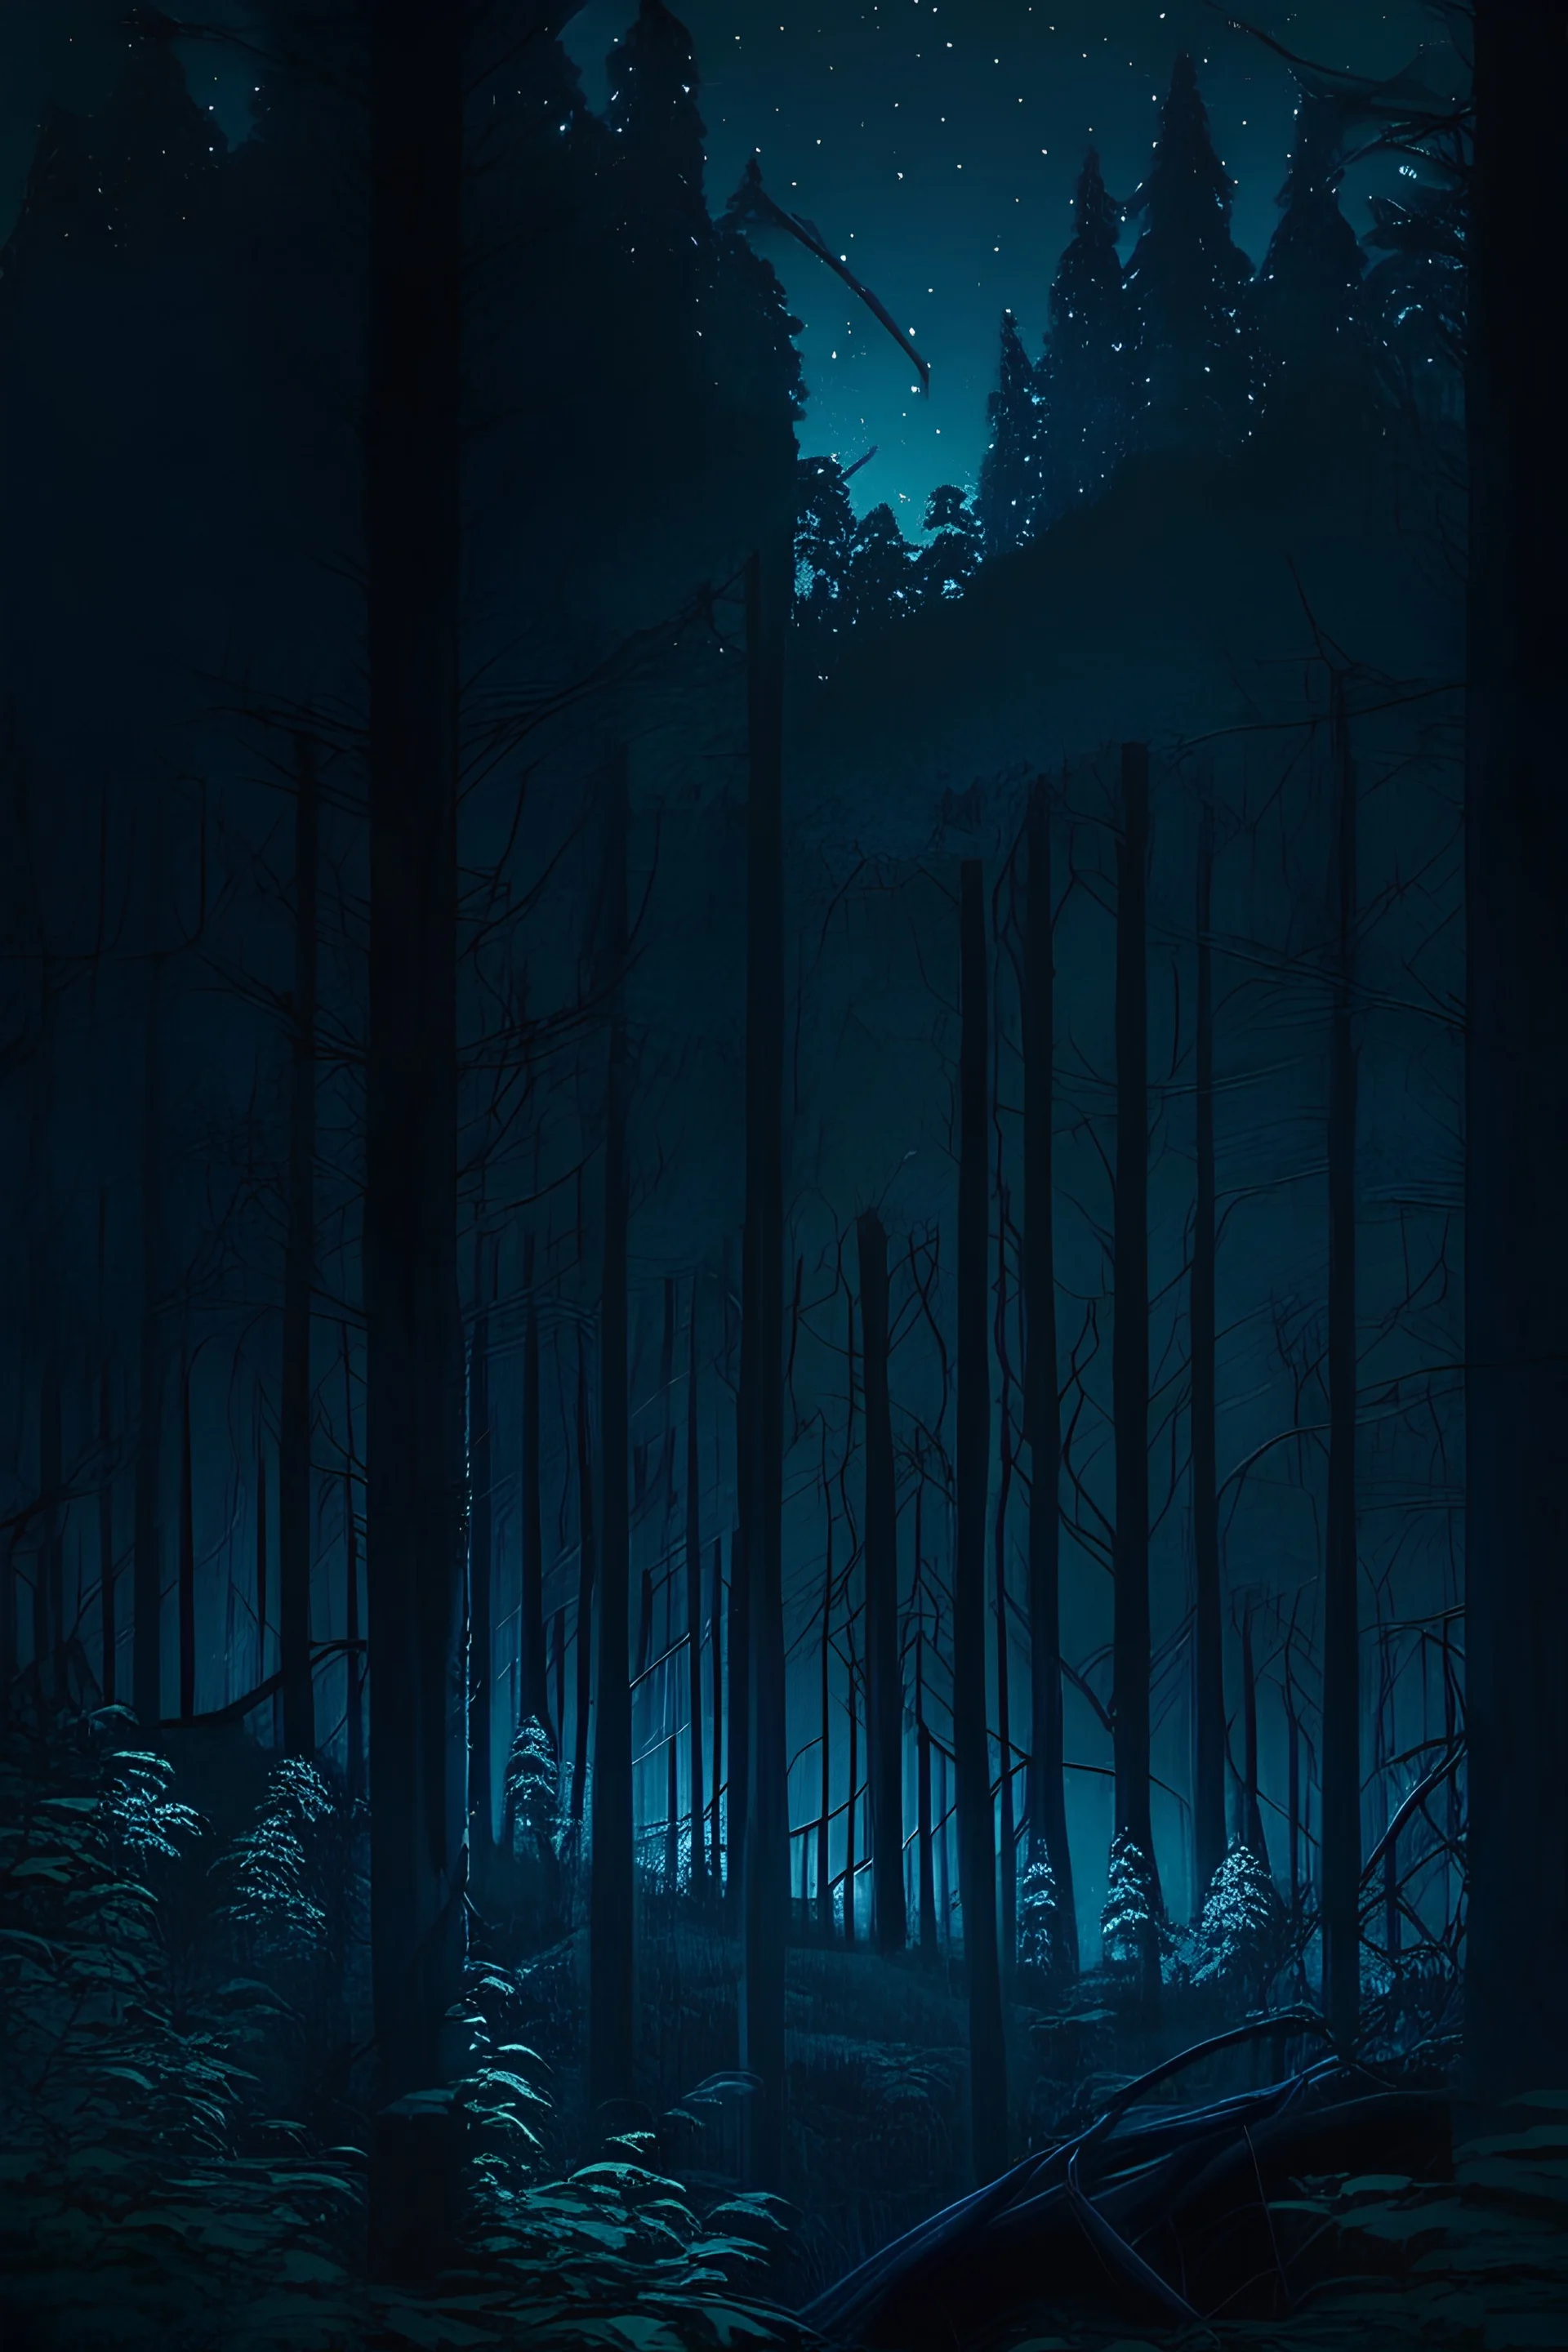 غابة في ليل